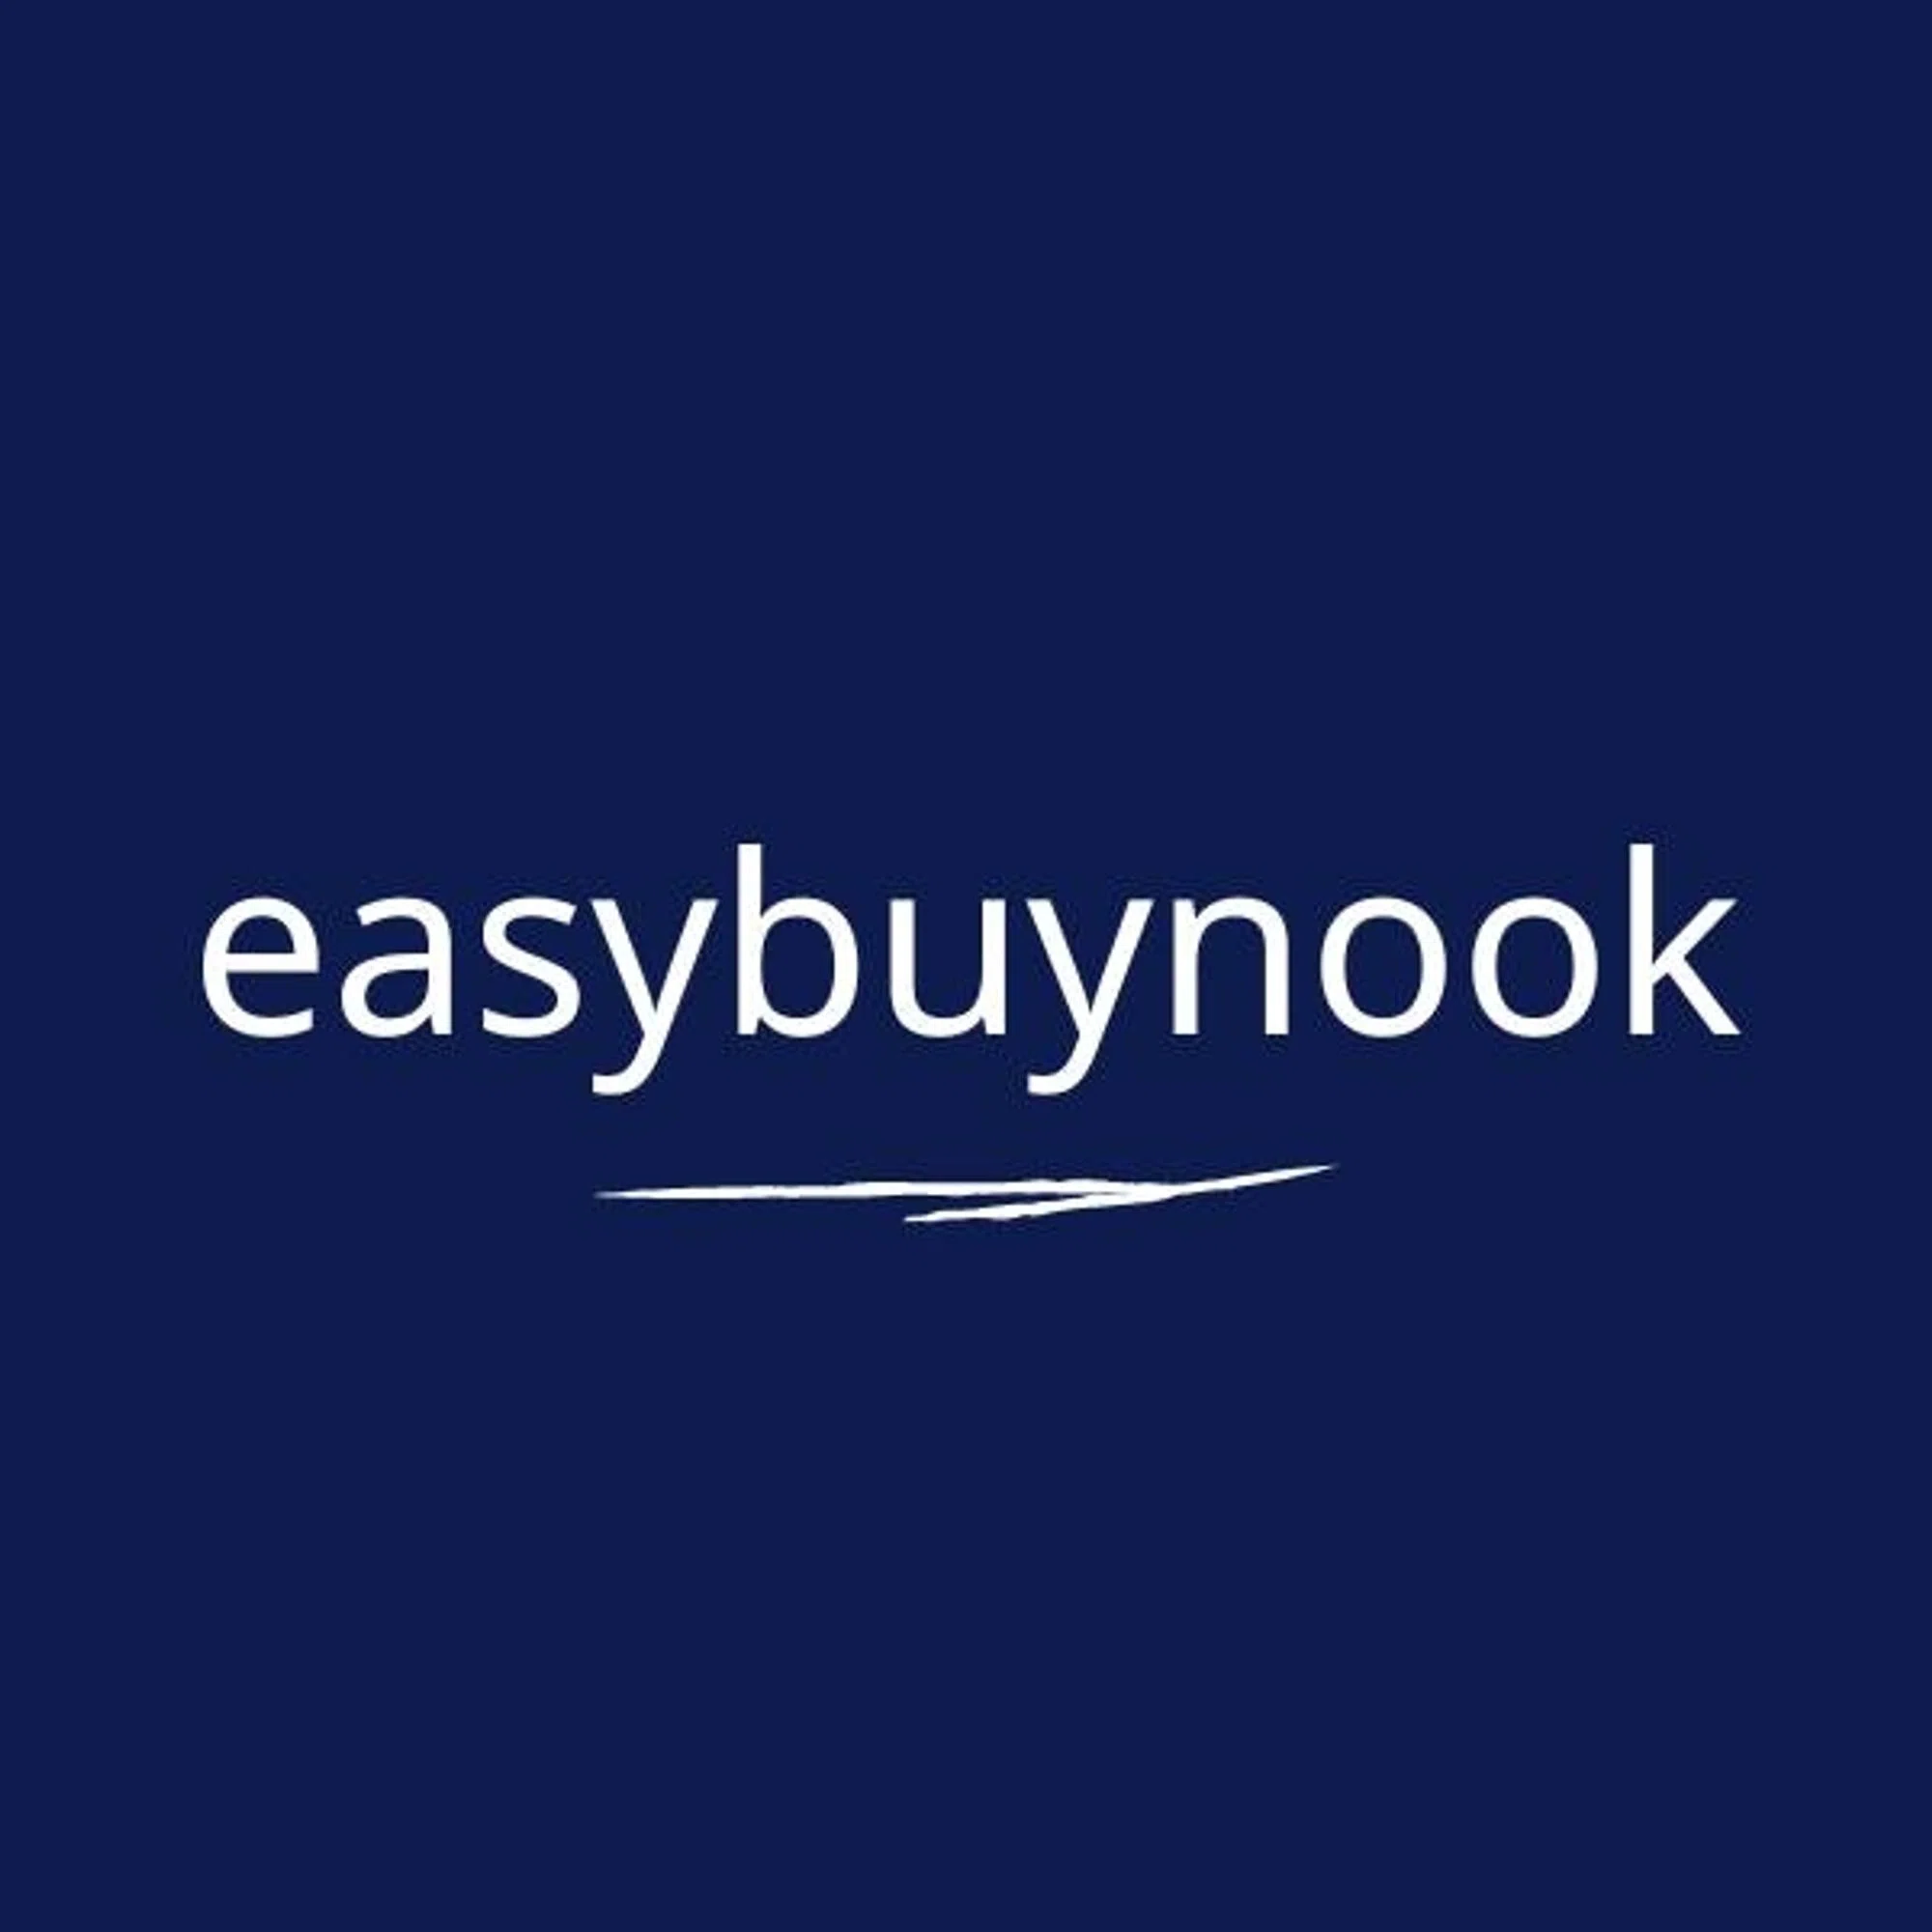 easybuynook.com logo